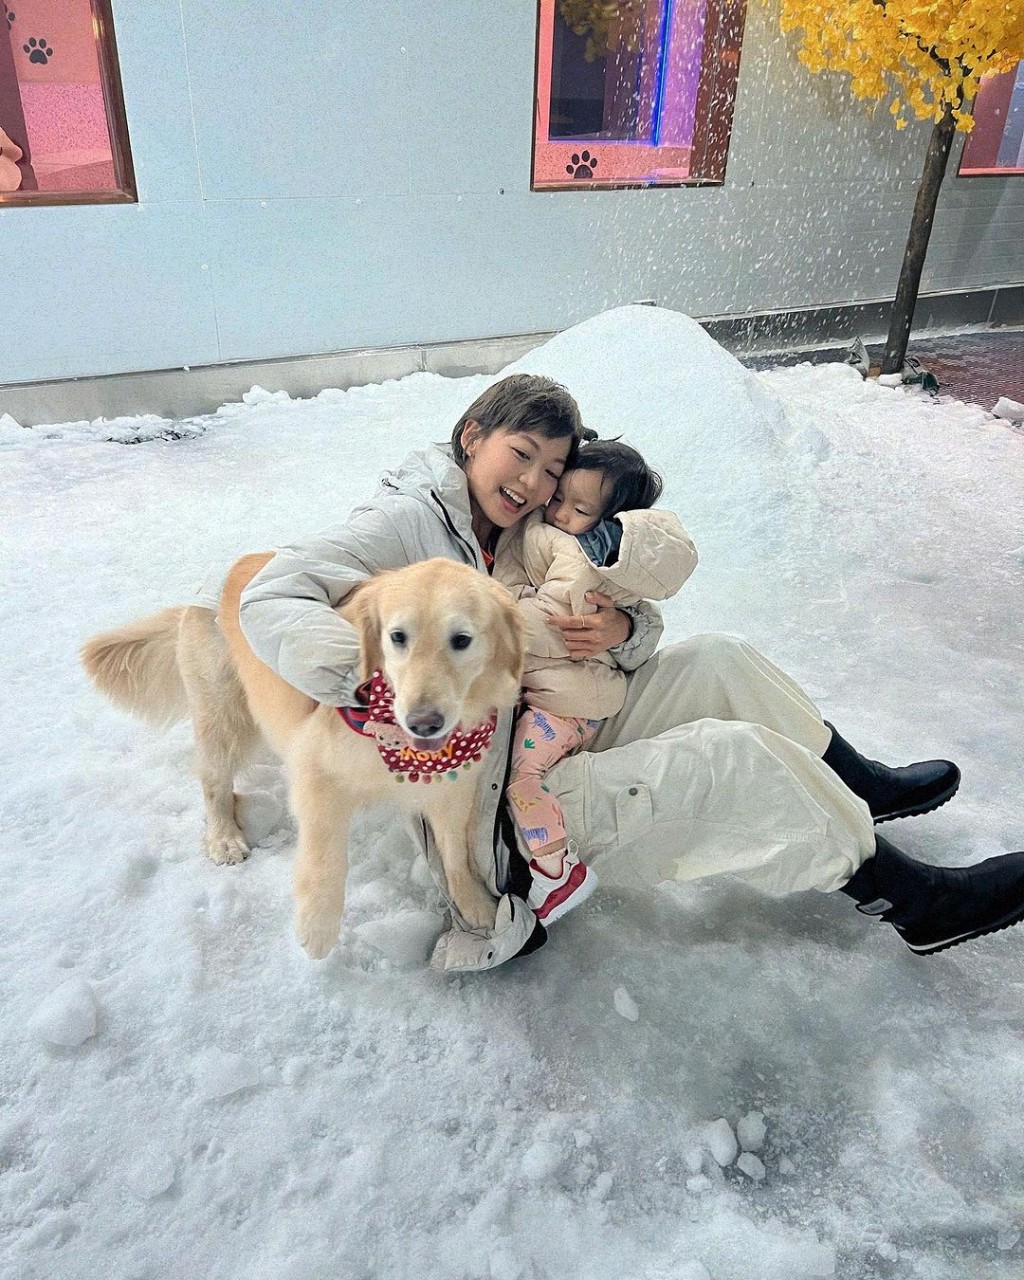 昨晚梁諾妍分享與囡囡Sir Face和愛犬Molly去玩雪的照片。